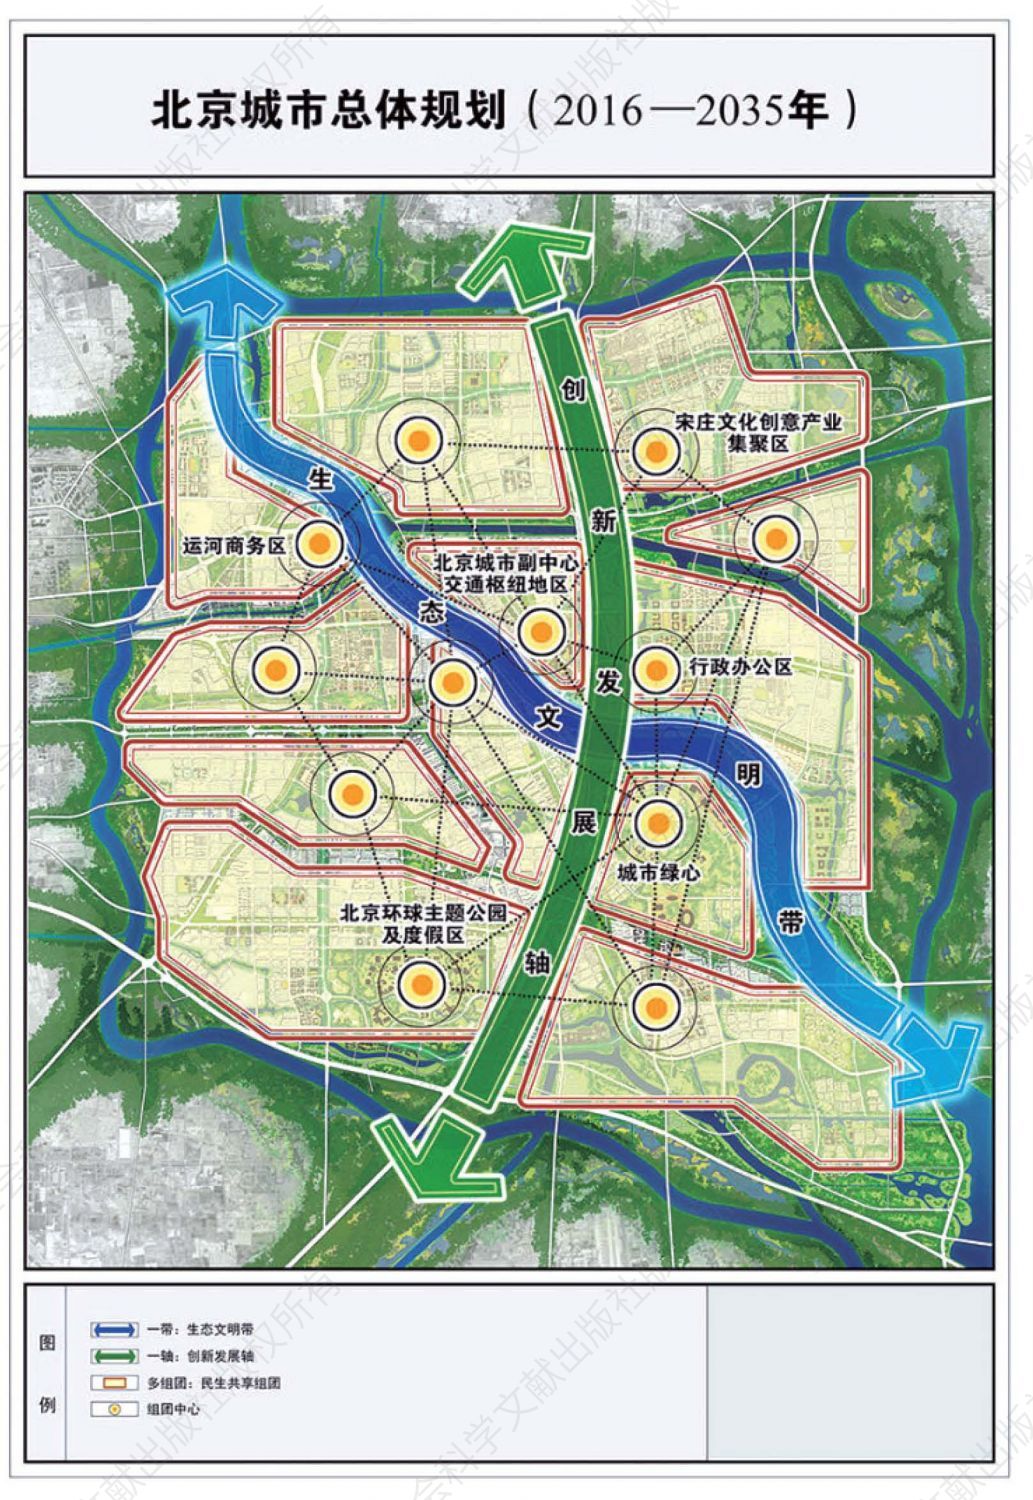 下图 北京城市副中心规划图